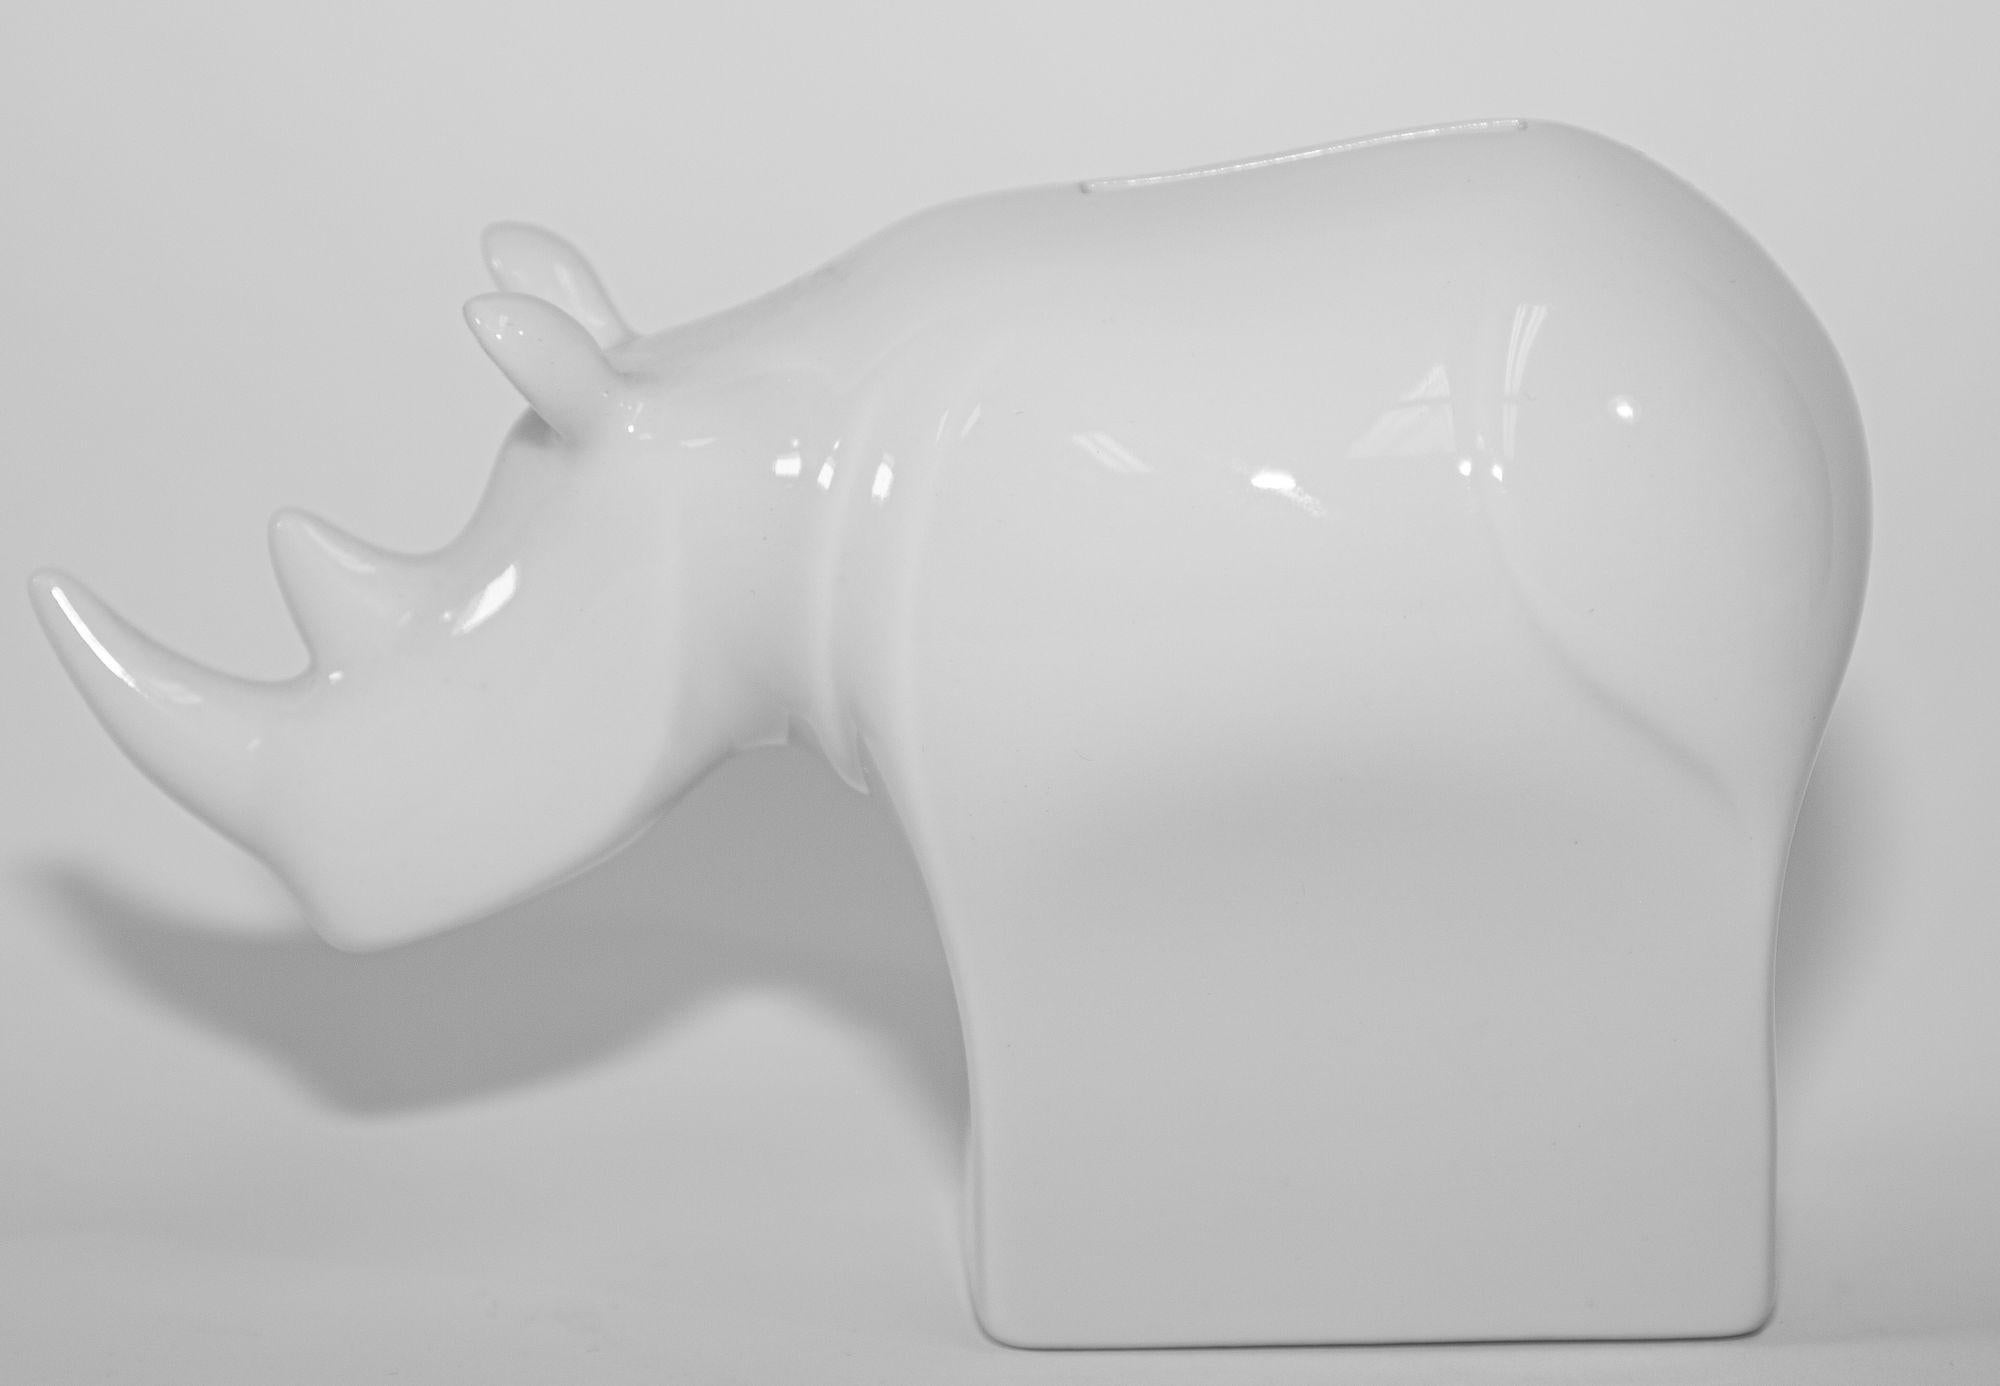 Vintage Dansk Rhinoceros white Porcelain ceramic Coin bank.
Banque Rhinocéros en porcelaine blanche Dansk, style scandinave, moderniste.
Une addition unique à votre maison moderne de style scandinave
Un design moderne très élégant.
Excellent